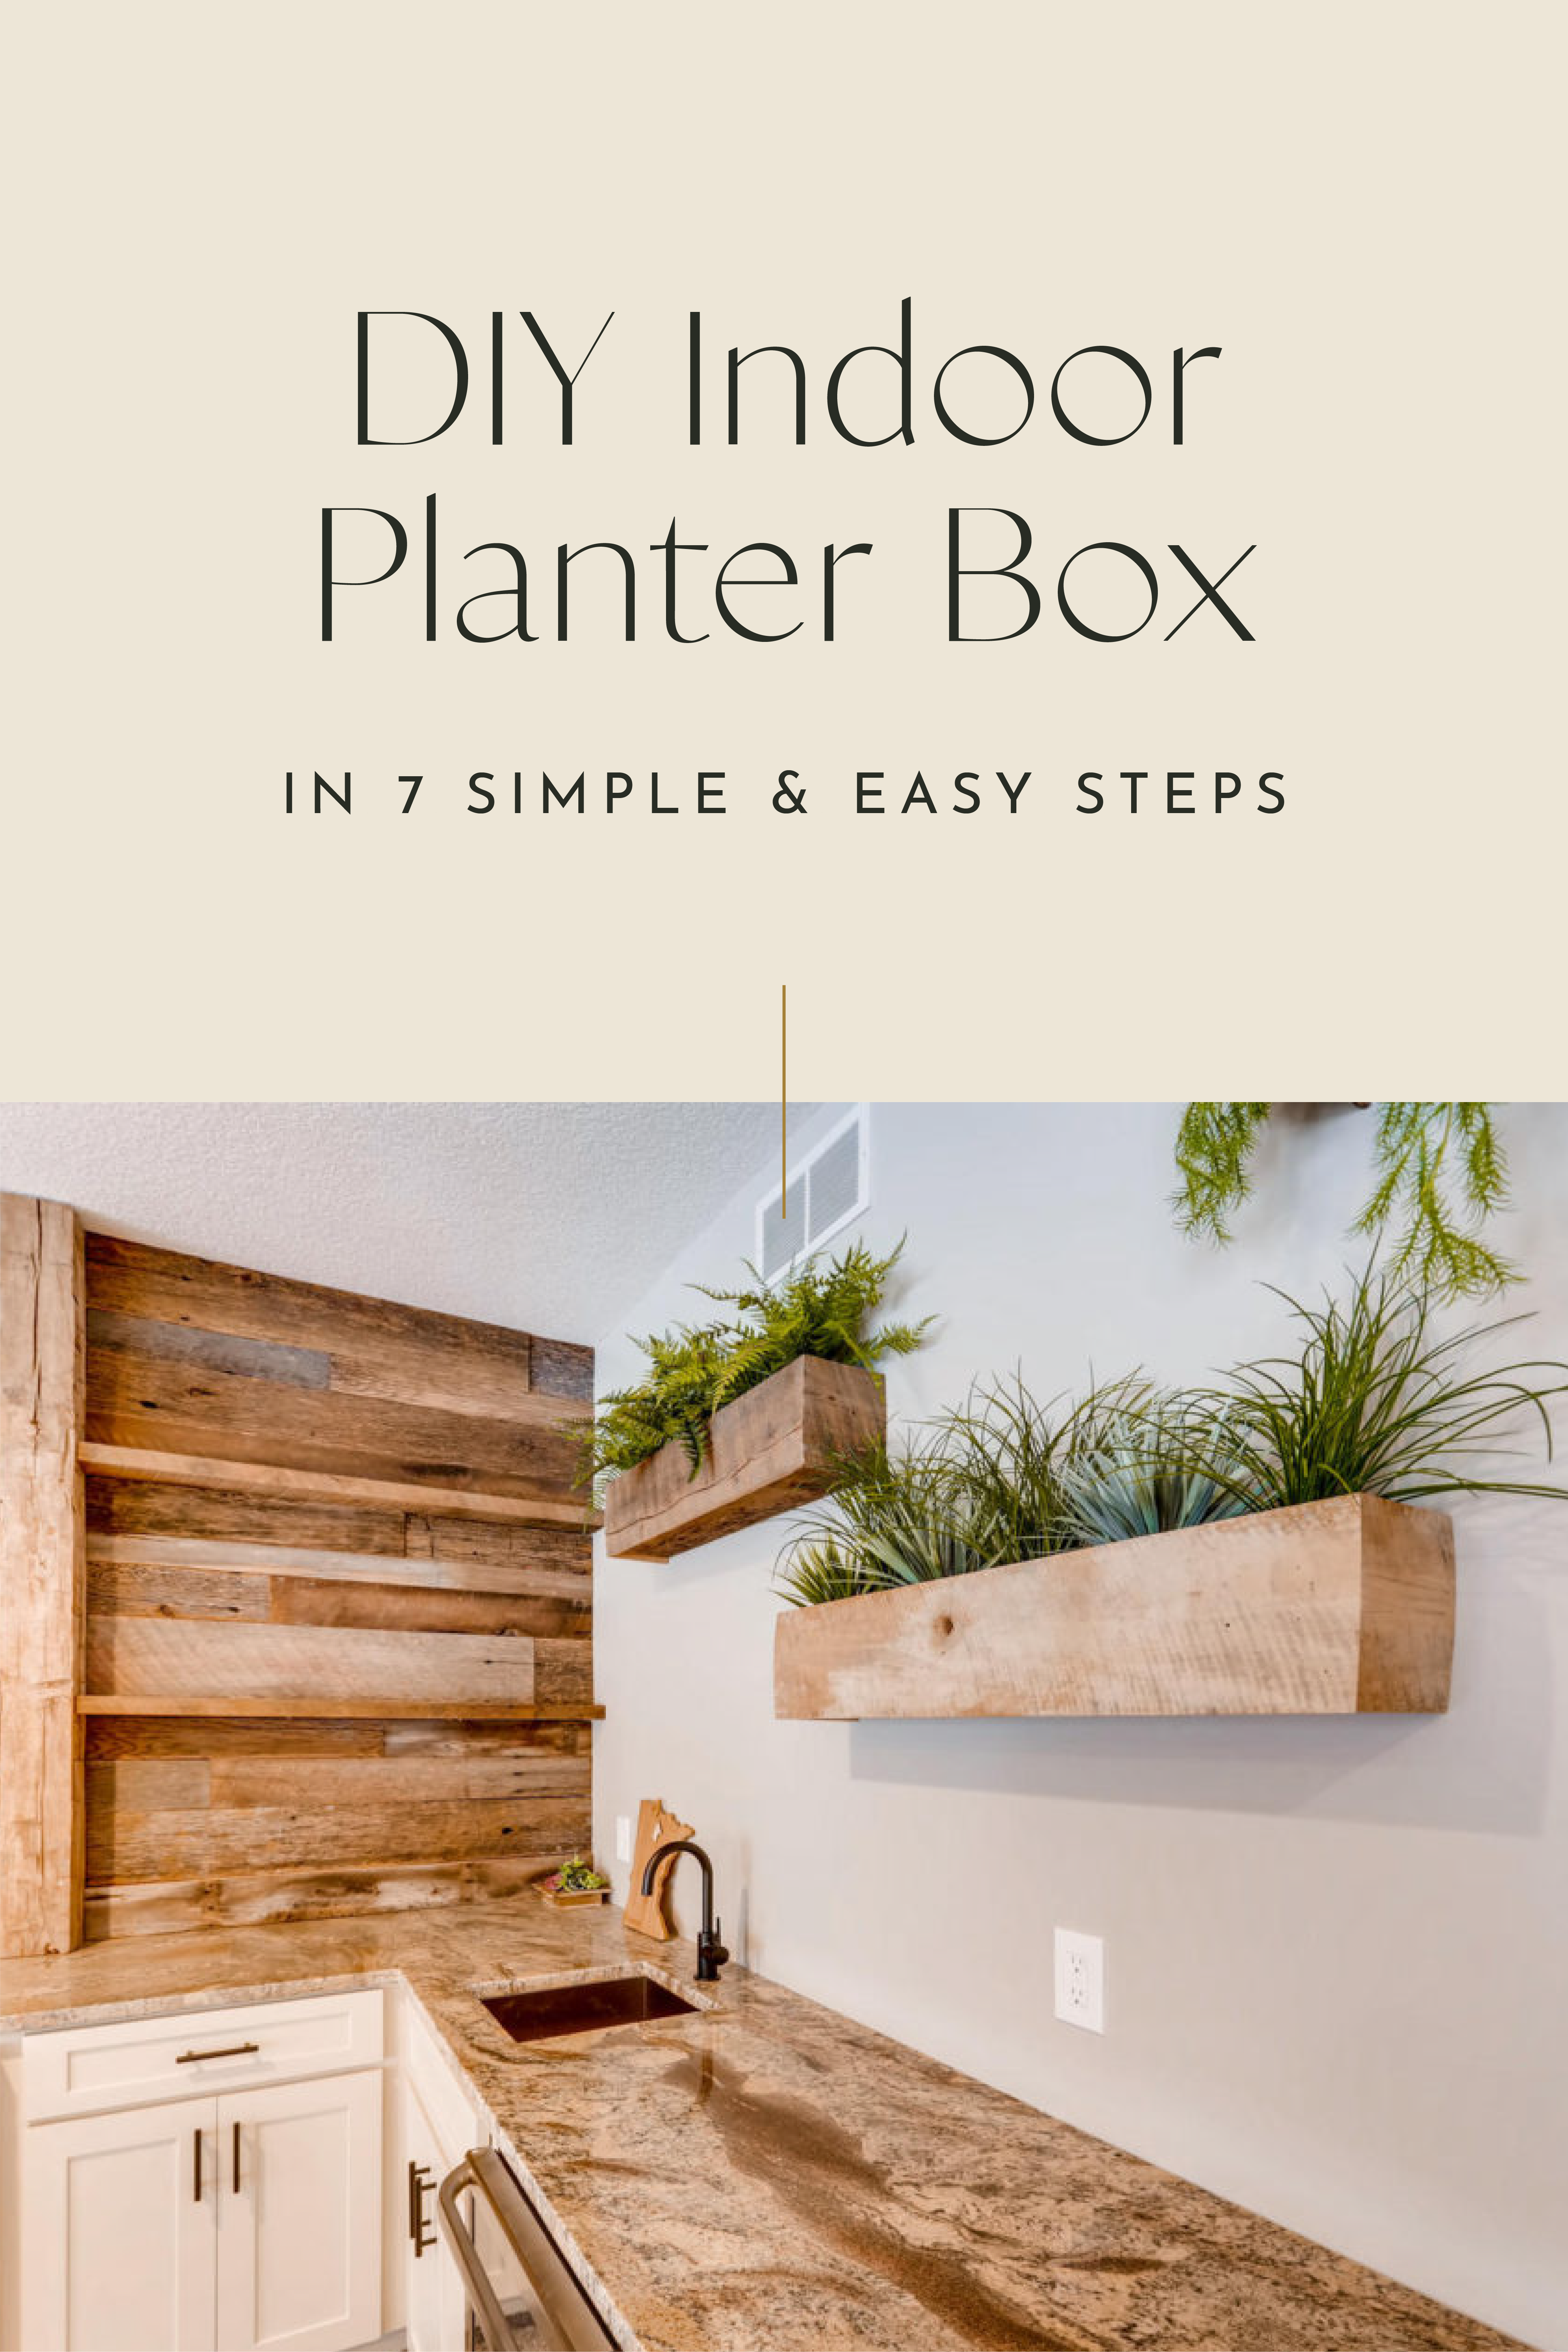 DIY Indoor Planter Box in 7 Simple, Easy Steps 1